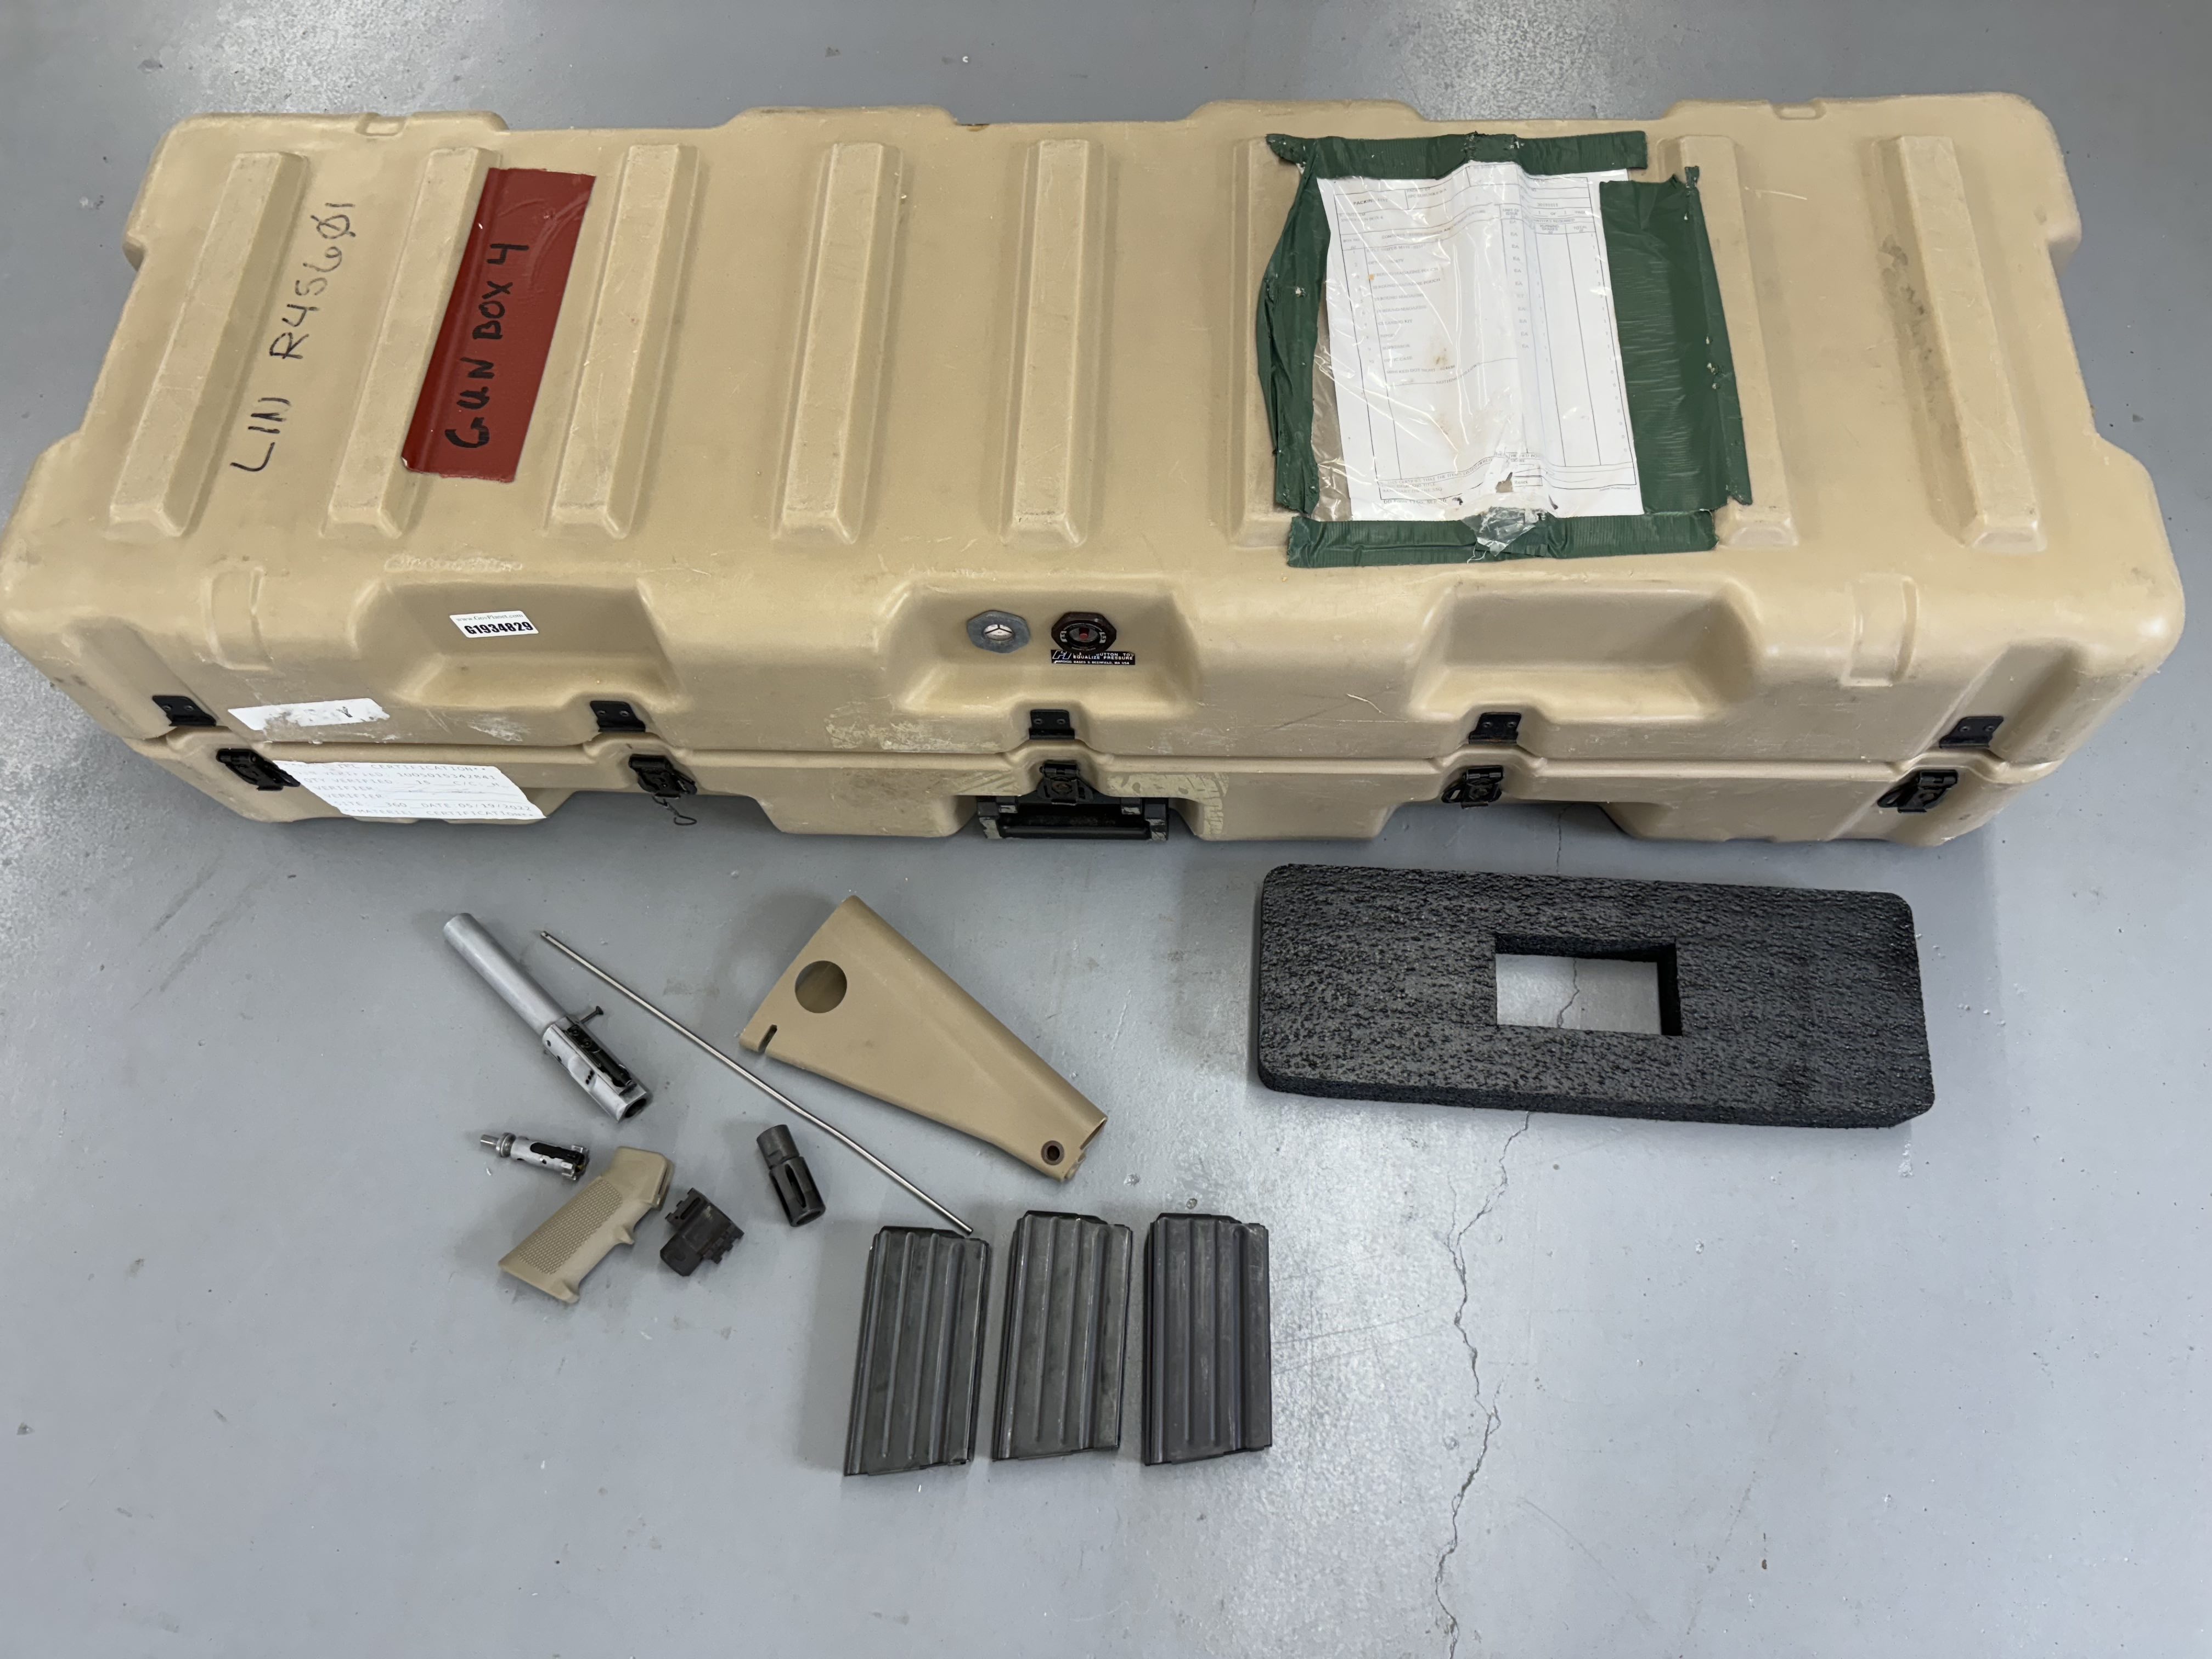 KAC M110 Deployment Starter Kit